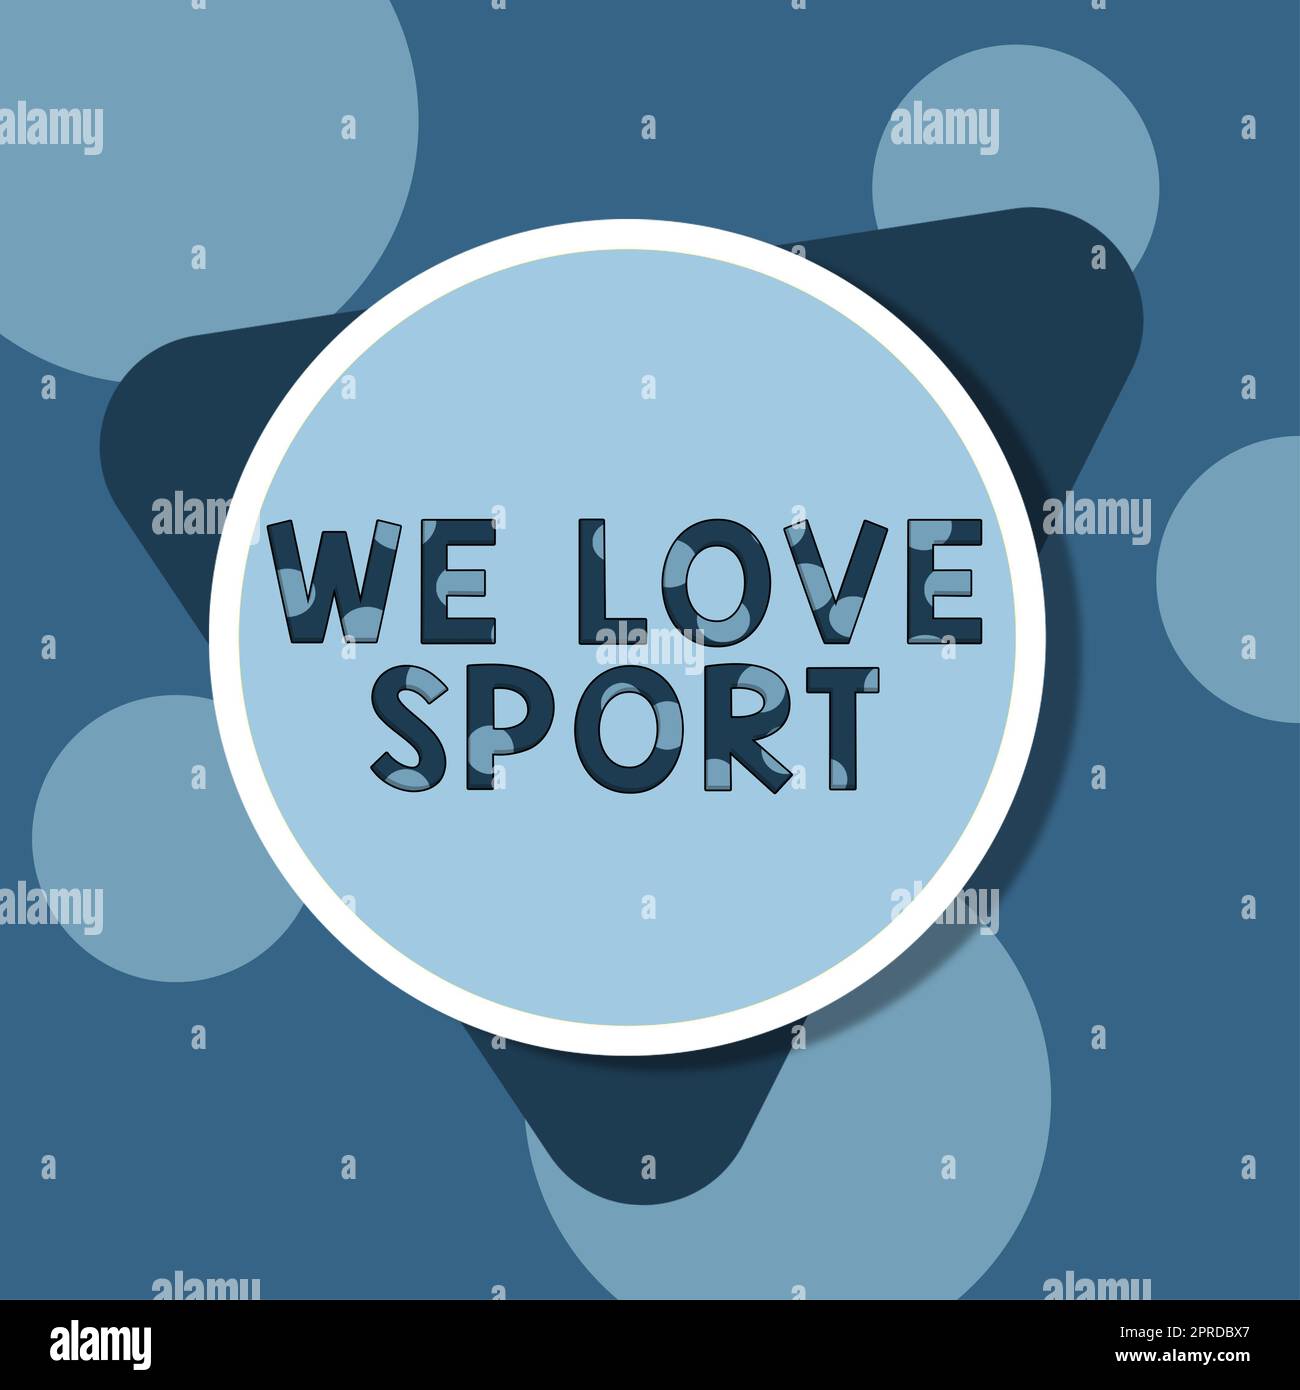 Handgeschriebenes Schild „We Love Sport“. Internetkonzept, um sportliche sportliche Aktivitäten zu mögen, arbeiten leere kreisförmige und dreieckige Formen für die Geschäftsförderung aus. Stockfoto